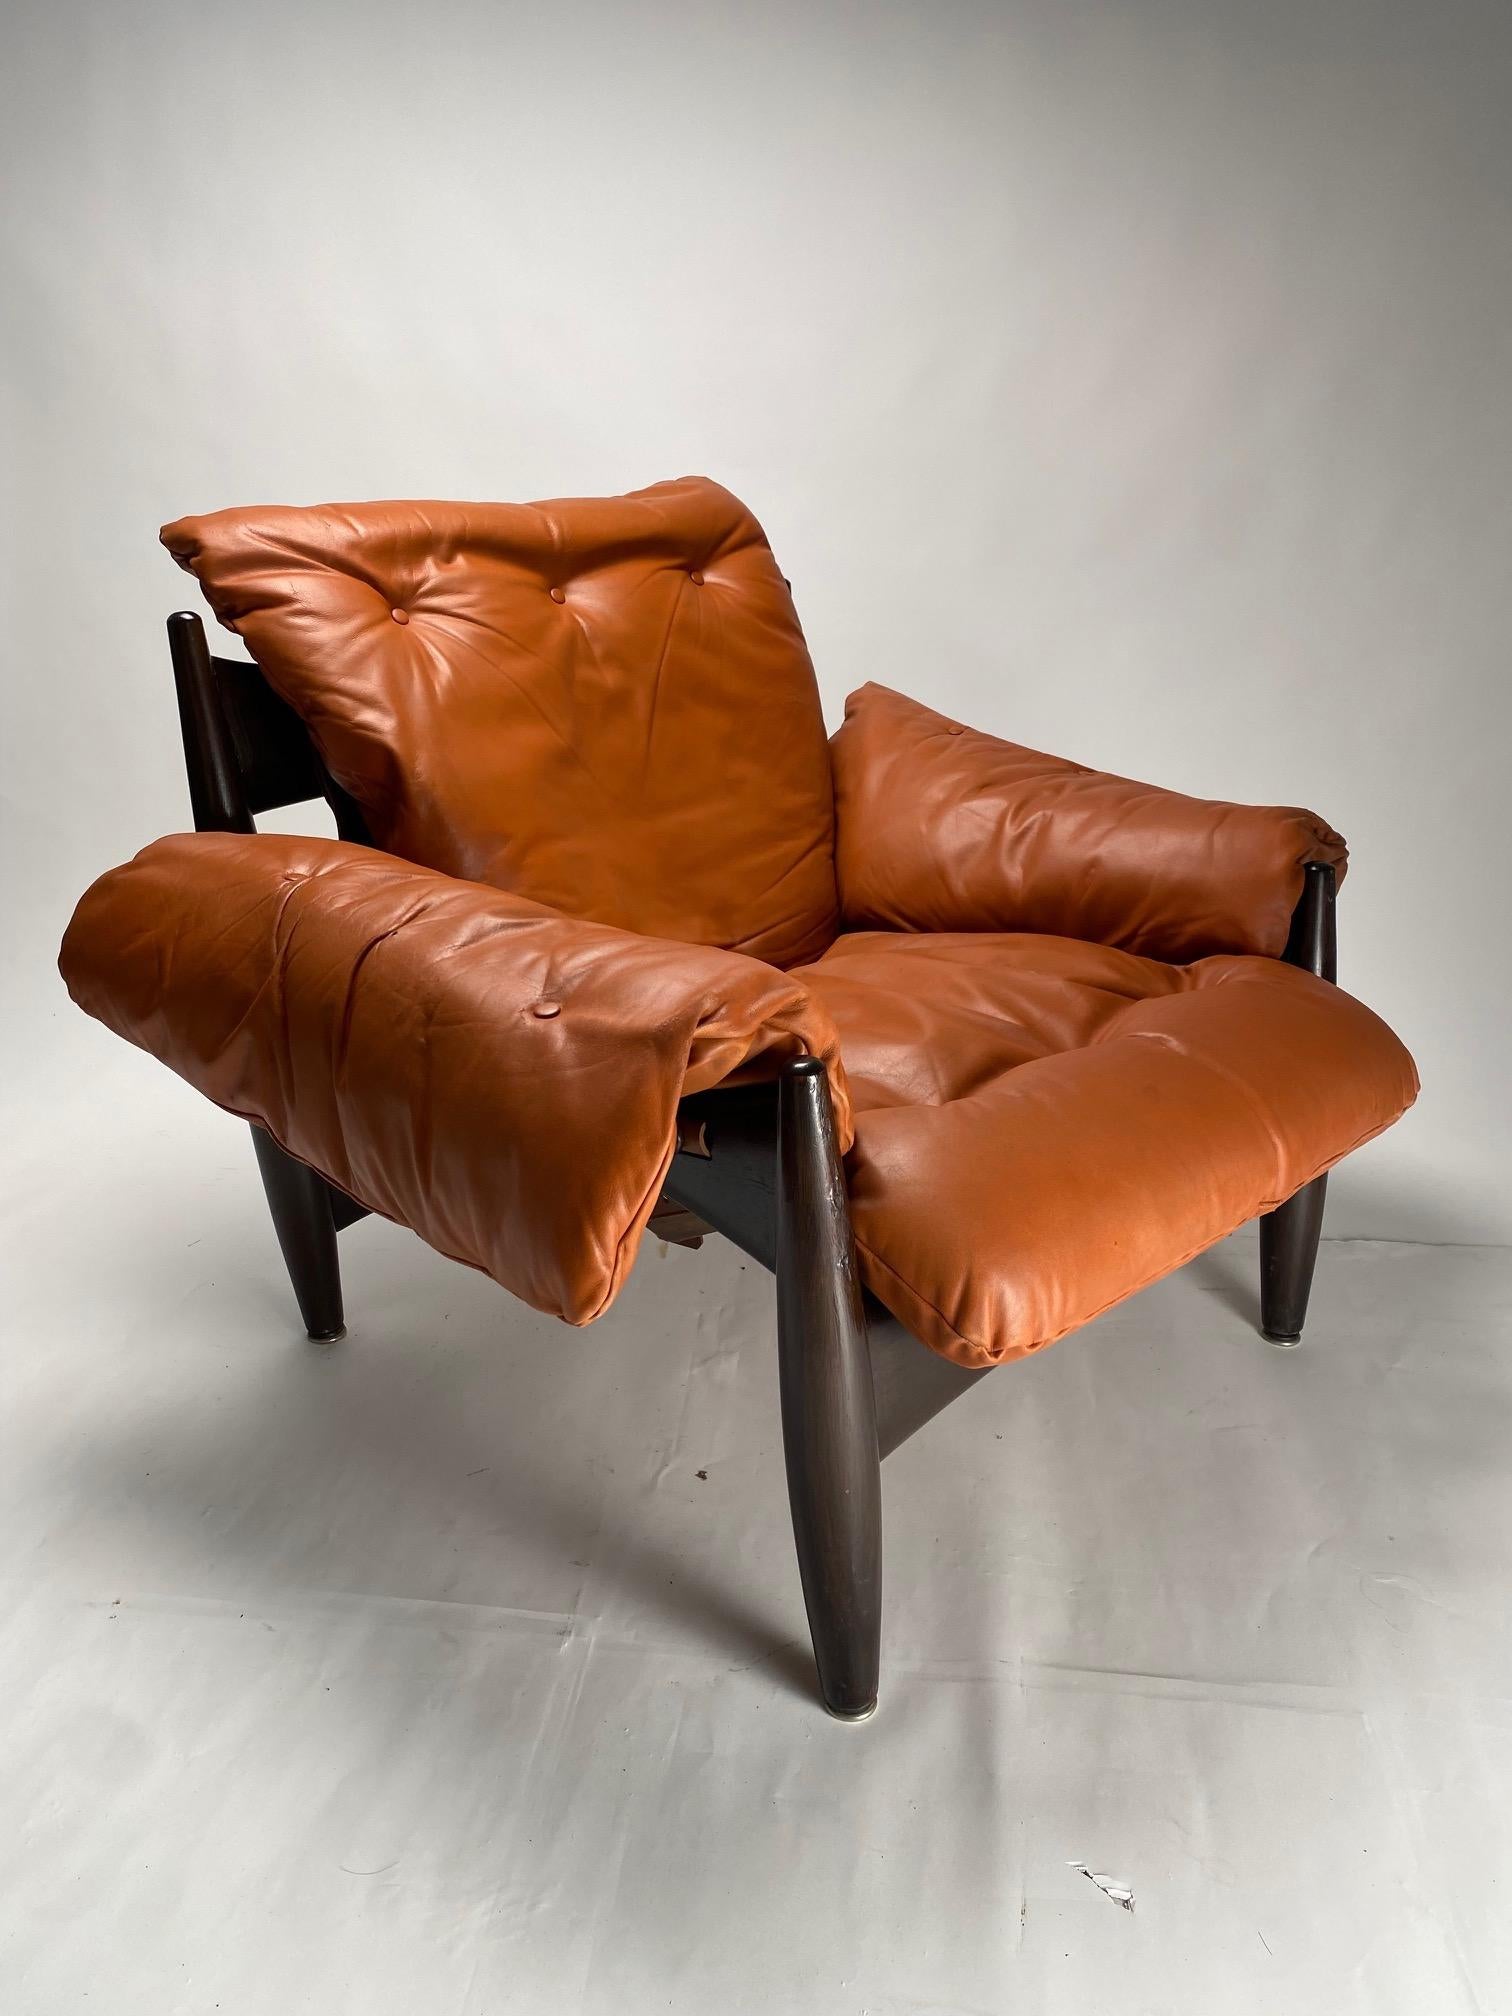 Als authentische Ikone des brasilianischen Mid-Century-Designs ist der Sheriff-Sessel eines der wichtigsten und beliebtesten Werke des brasilianischen Designers Sergio Rodrigues. 

Das äußerst bequeme Gestell aus Massivholz stützt ein großes